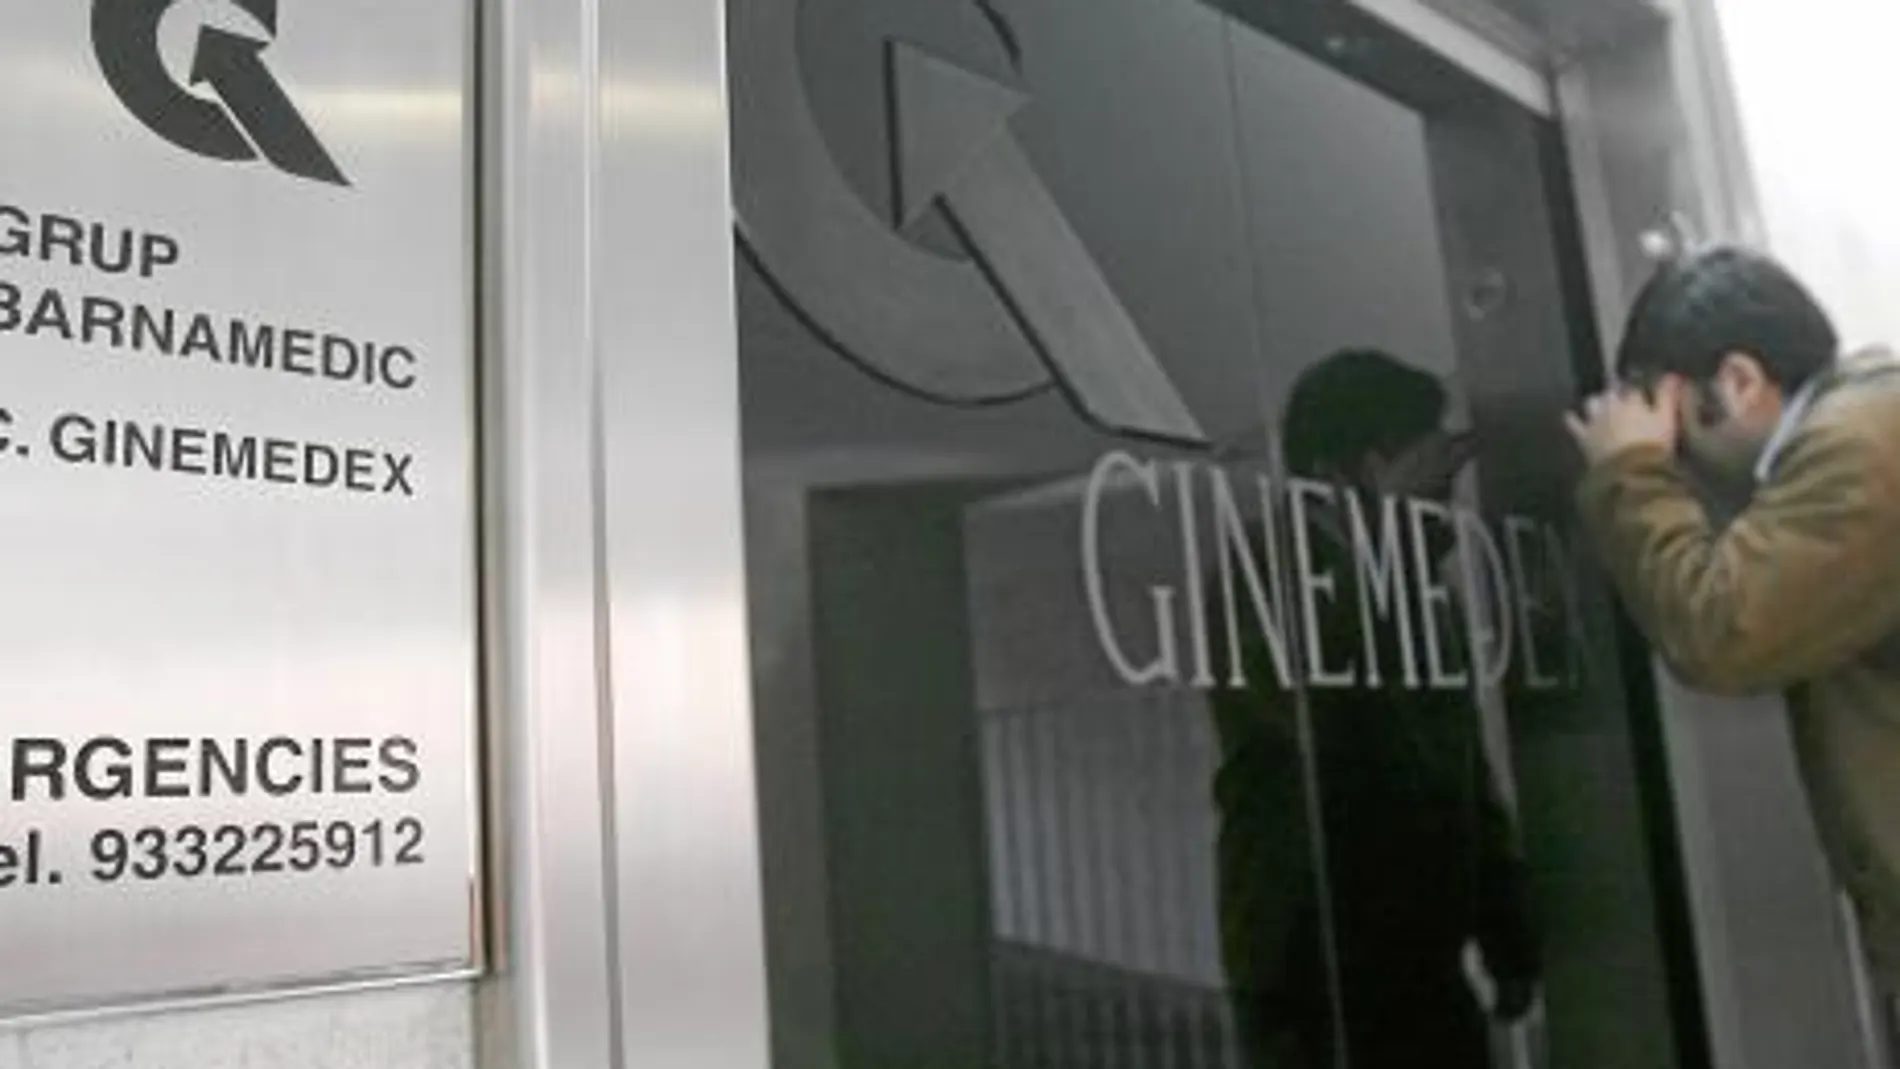 Las clínicas Ginemedex y TCB, propiedad de Morín, están siendo investigadas por supuestas irregularidades